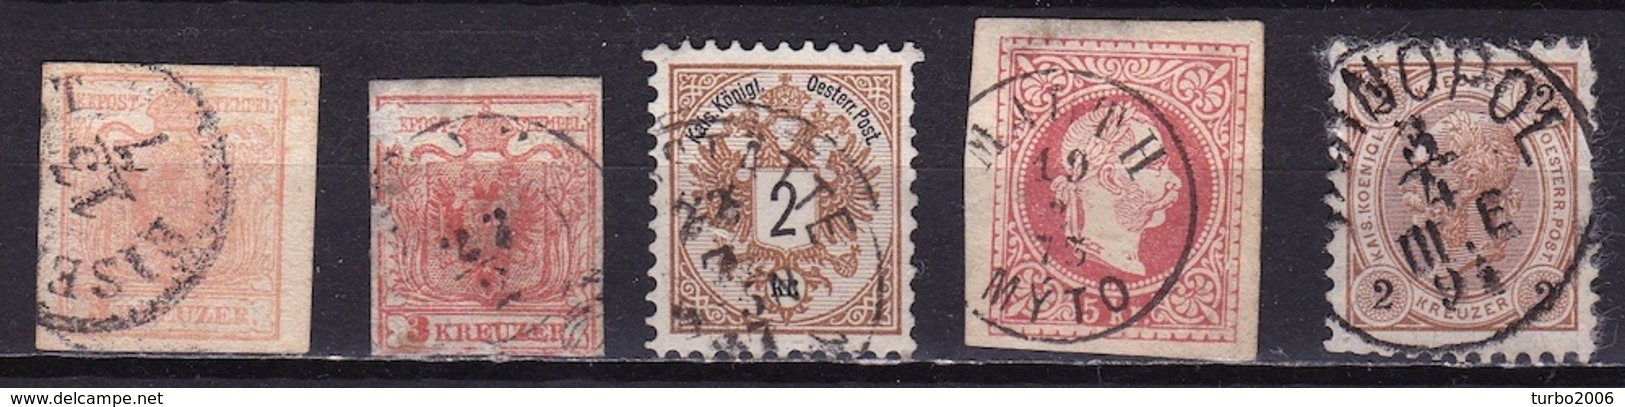 Osterreich /  Austria 1850 / 1899 5 Old Stamps As Shown On Scan - Gebruikt